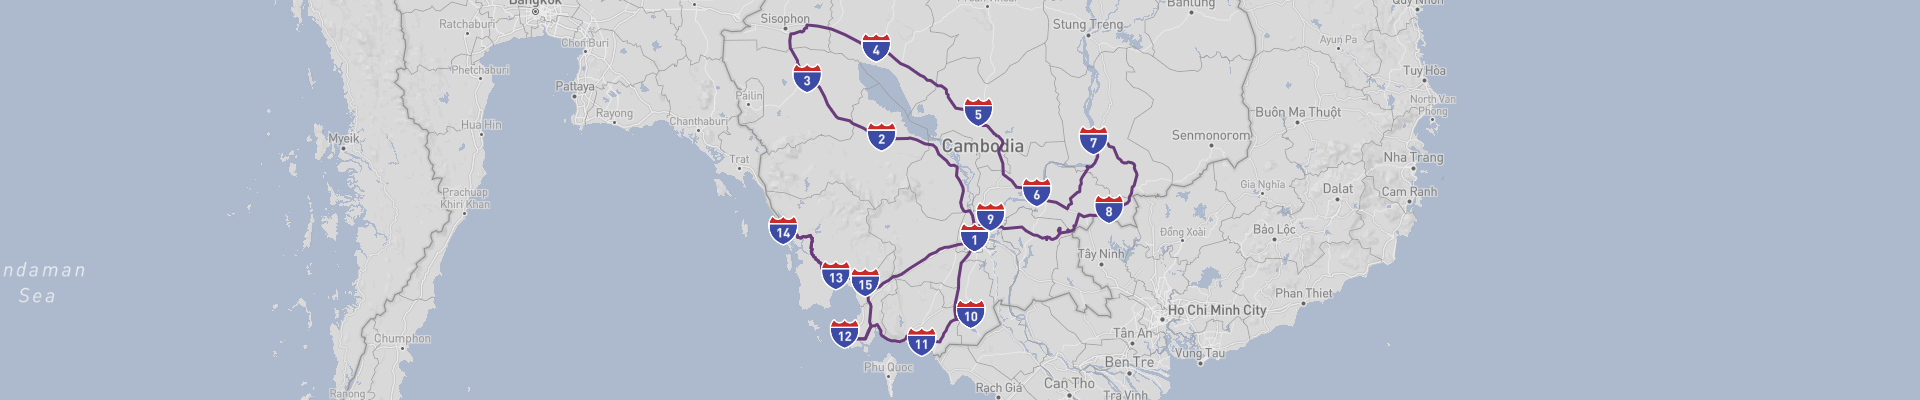 Itinéraire Cambodia 